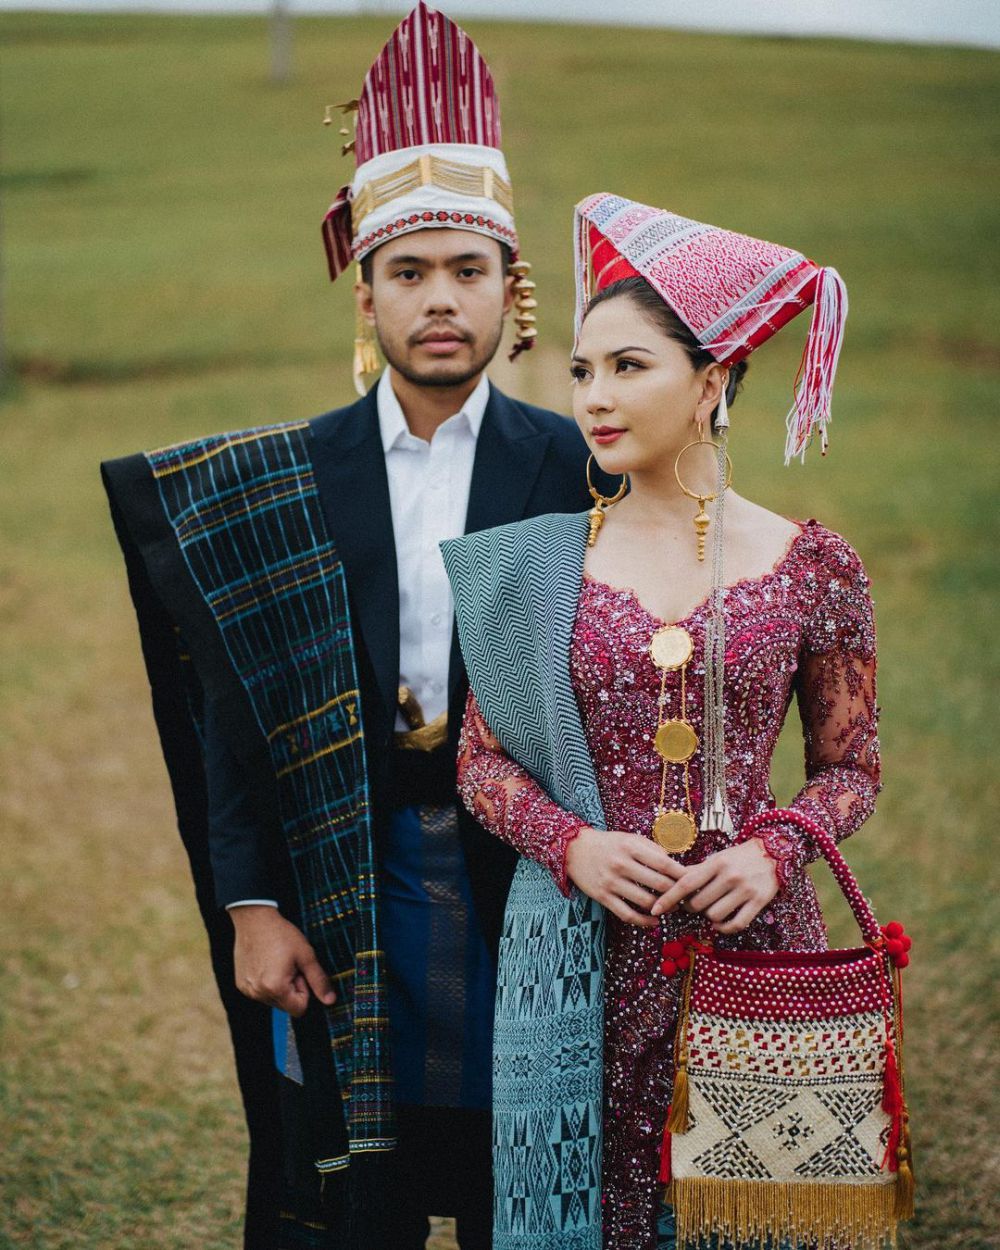 9 Panggilan Sayang dalam Bahasa Batak untuk Pasangan, Romantis Kali!